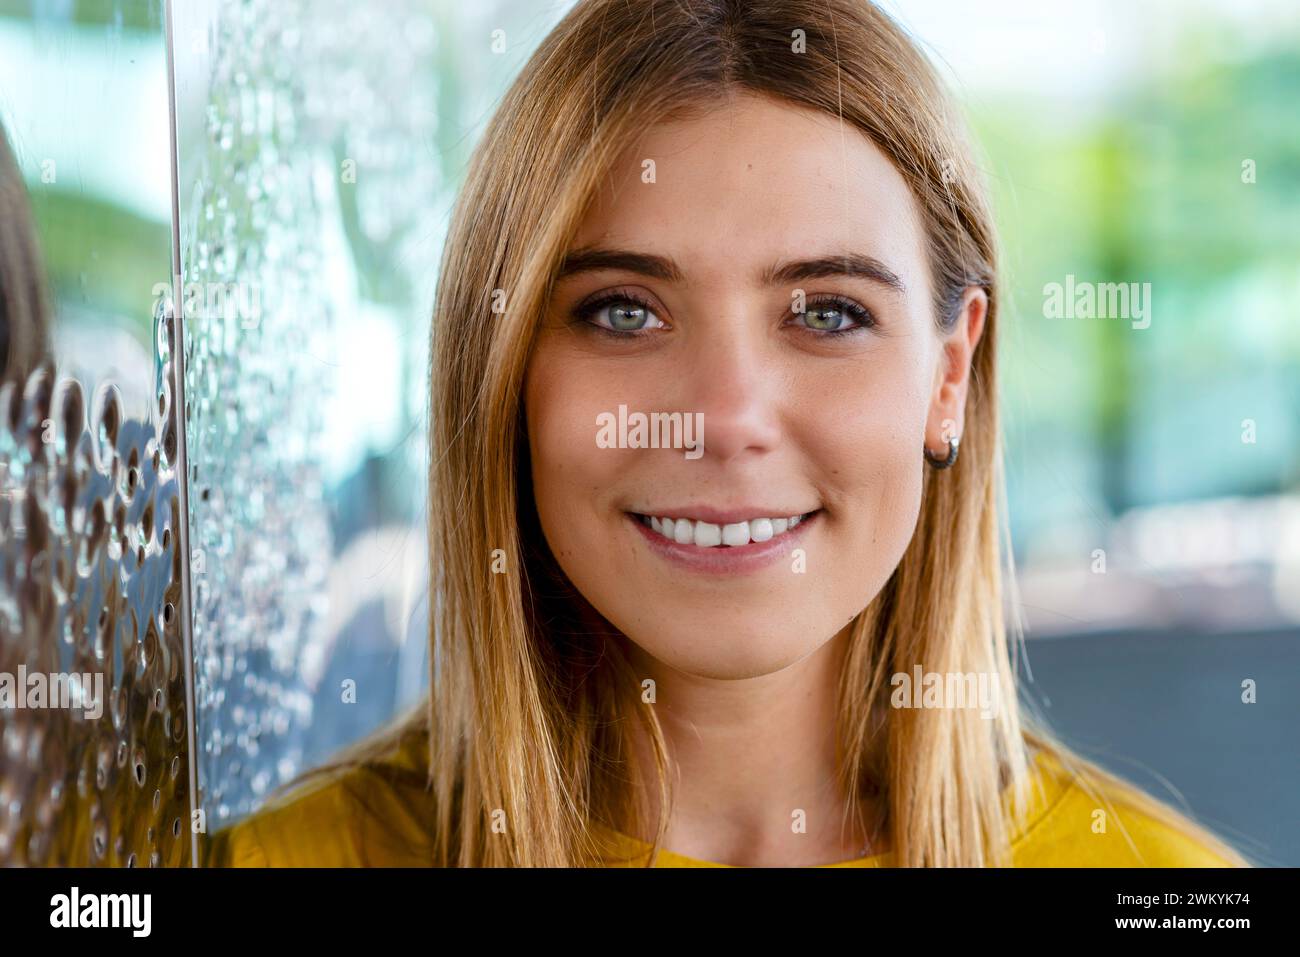 Esta imagen de primer plano muestra la cautivadora mirada de una joven con una cálida sonrisa, con un top amarillo que destaca su alegre expresión. El ba Foto de stock